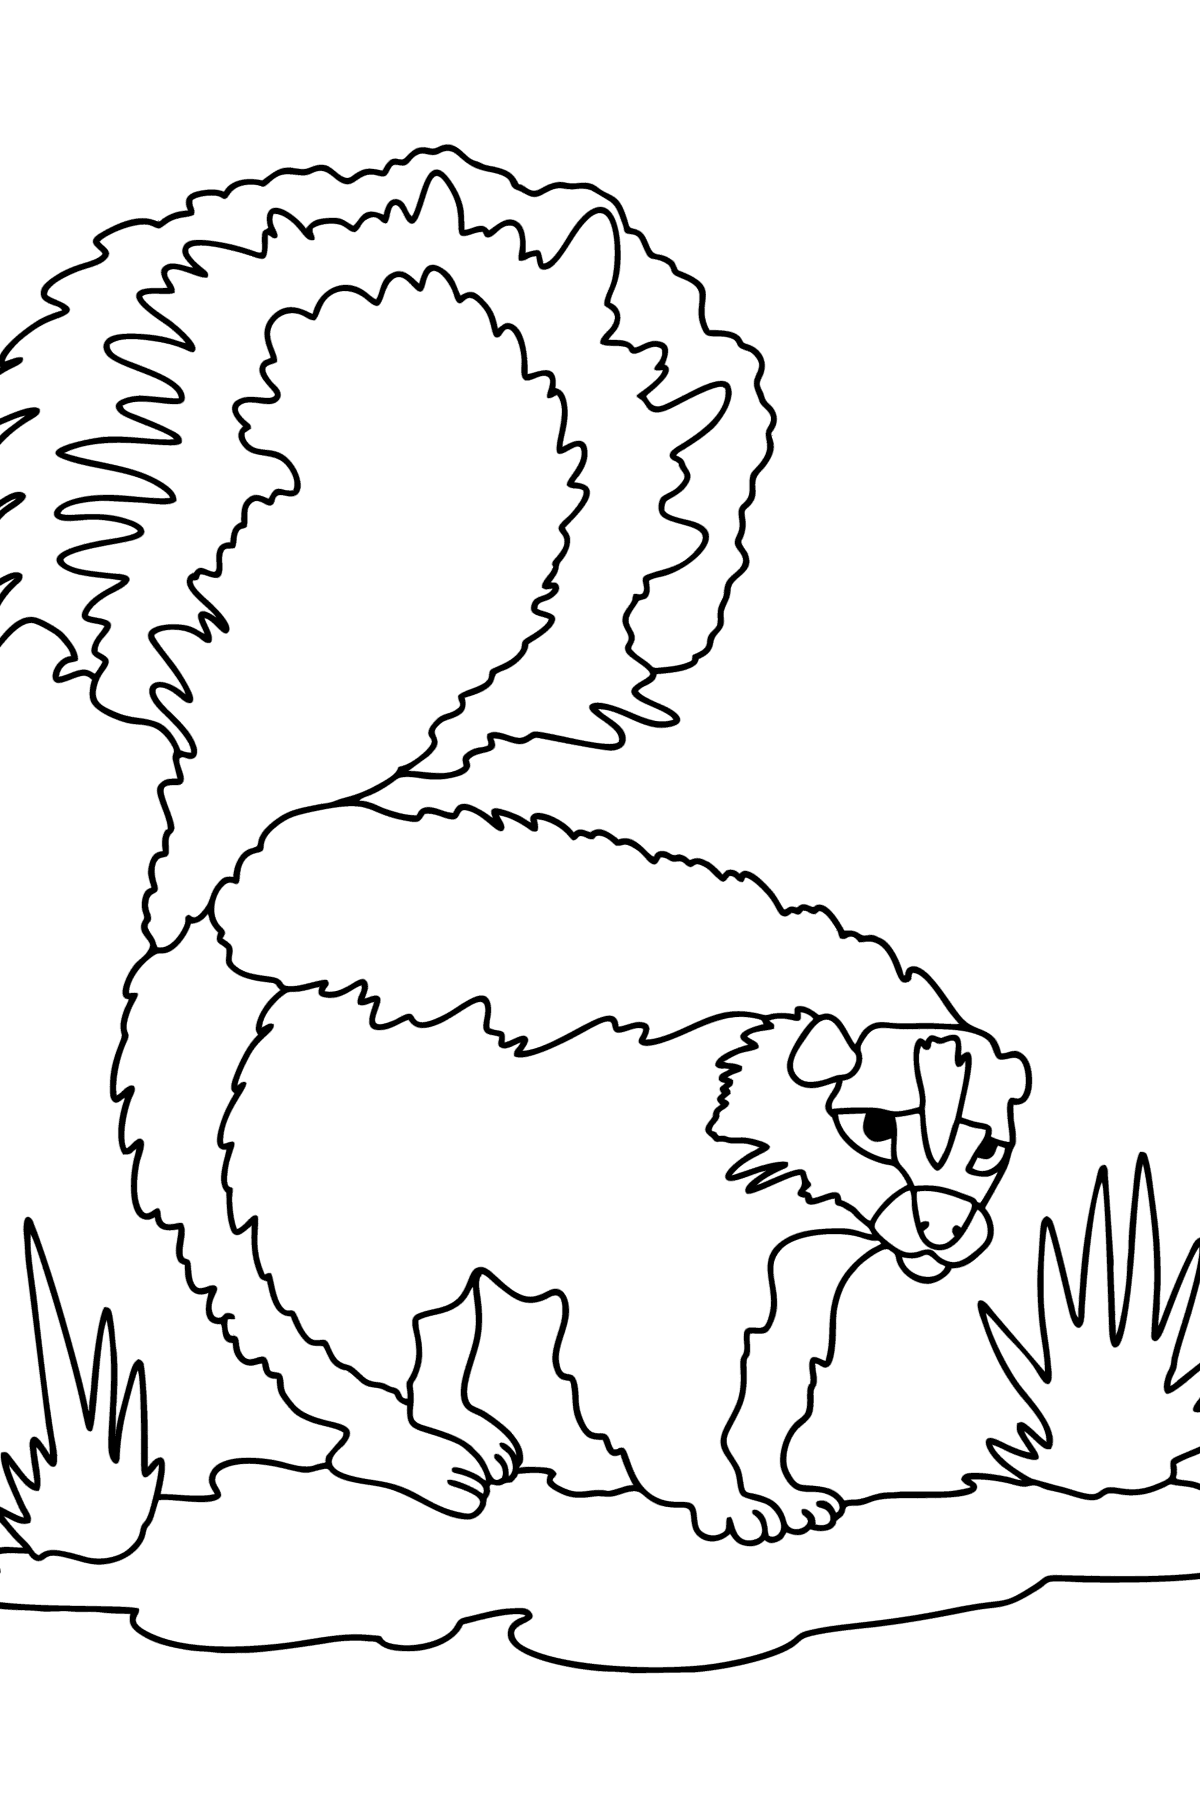 Tegning til fargelegging Skunk i ørkenen - Tegninger til fargelegging for barn